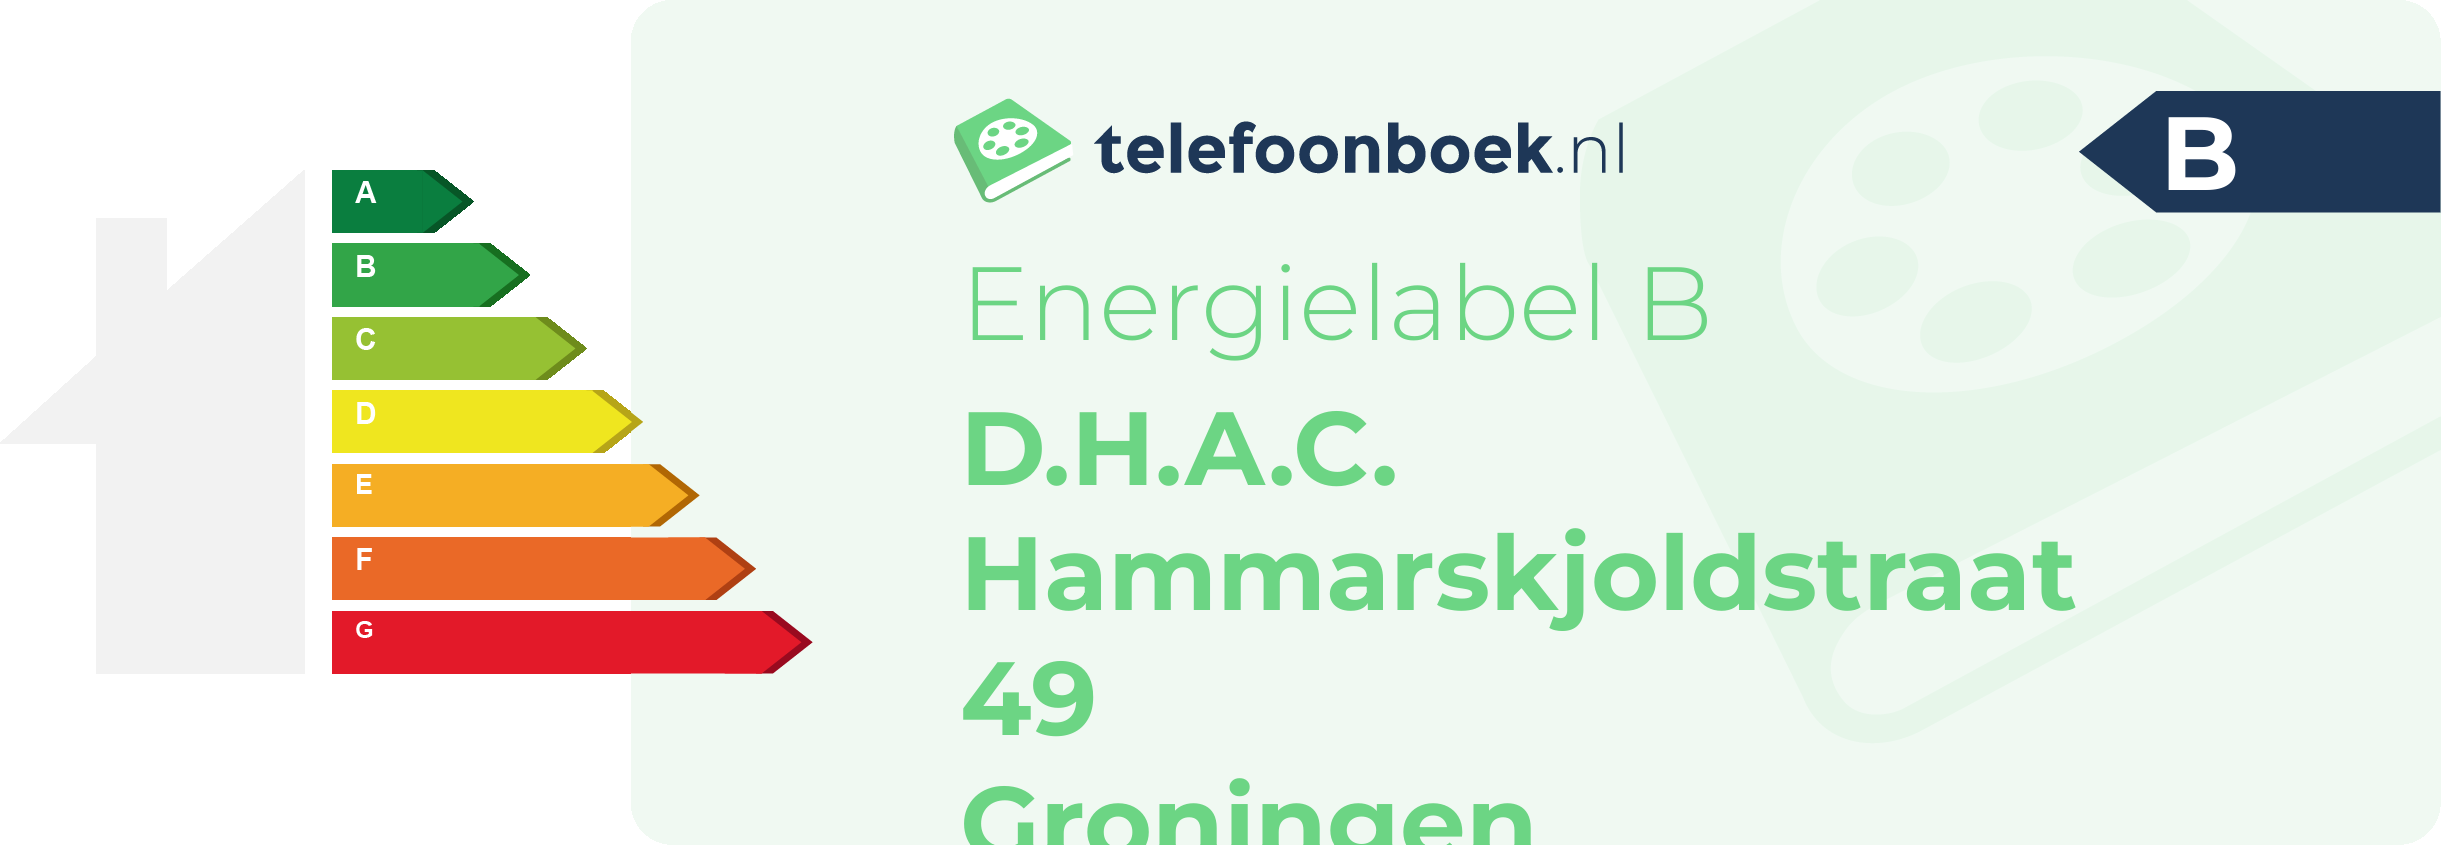 Energielabel D.H.A.C. Hammarskjoldstraat 49 Groningen